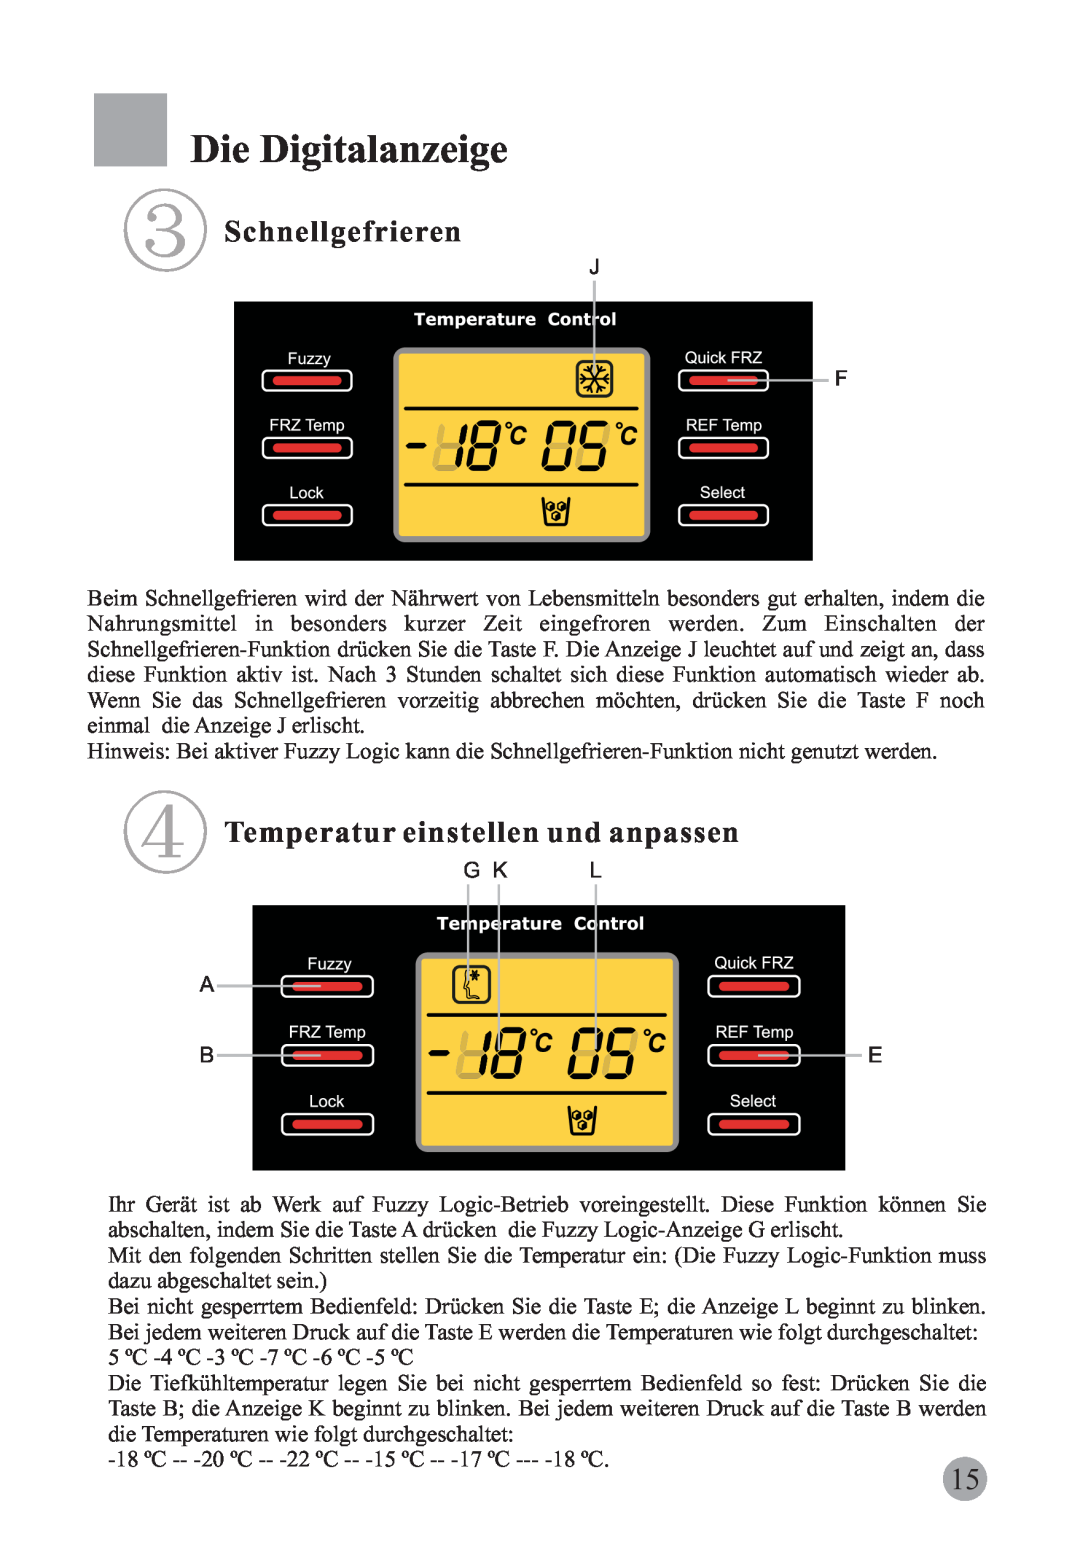 Haier HRF-663CJ, HRF-663ISB2 manual Die Digitalanzeige, Schnellgefrieren, Temperatur einstellen und anpassen 